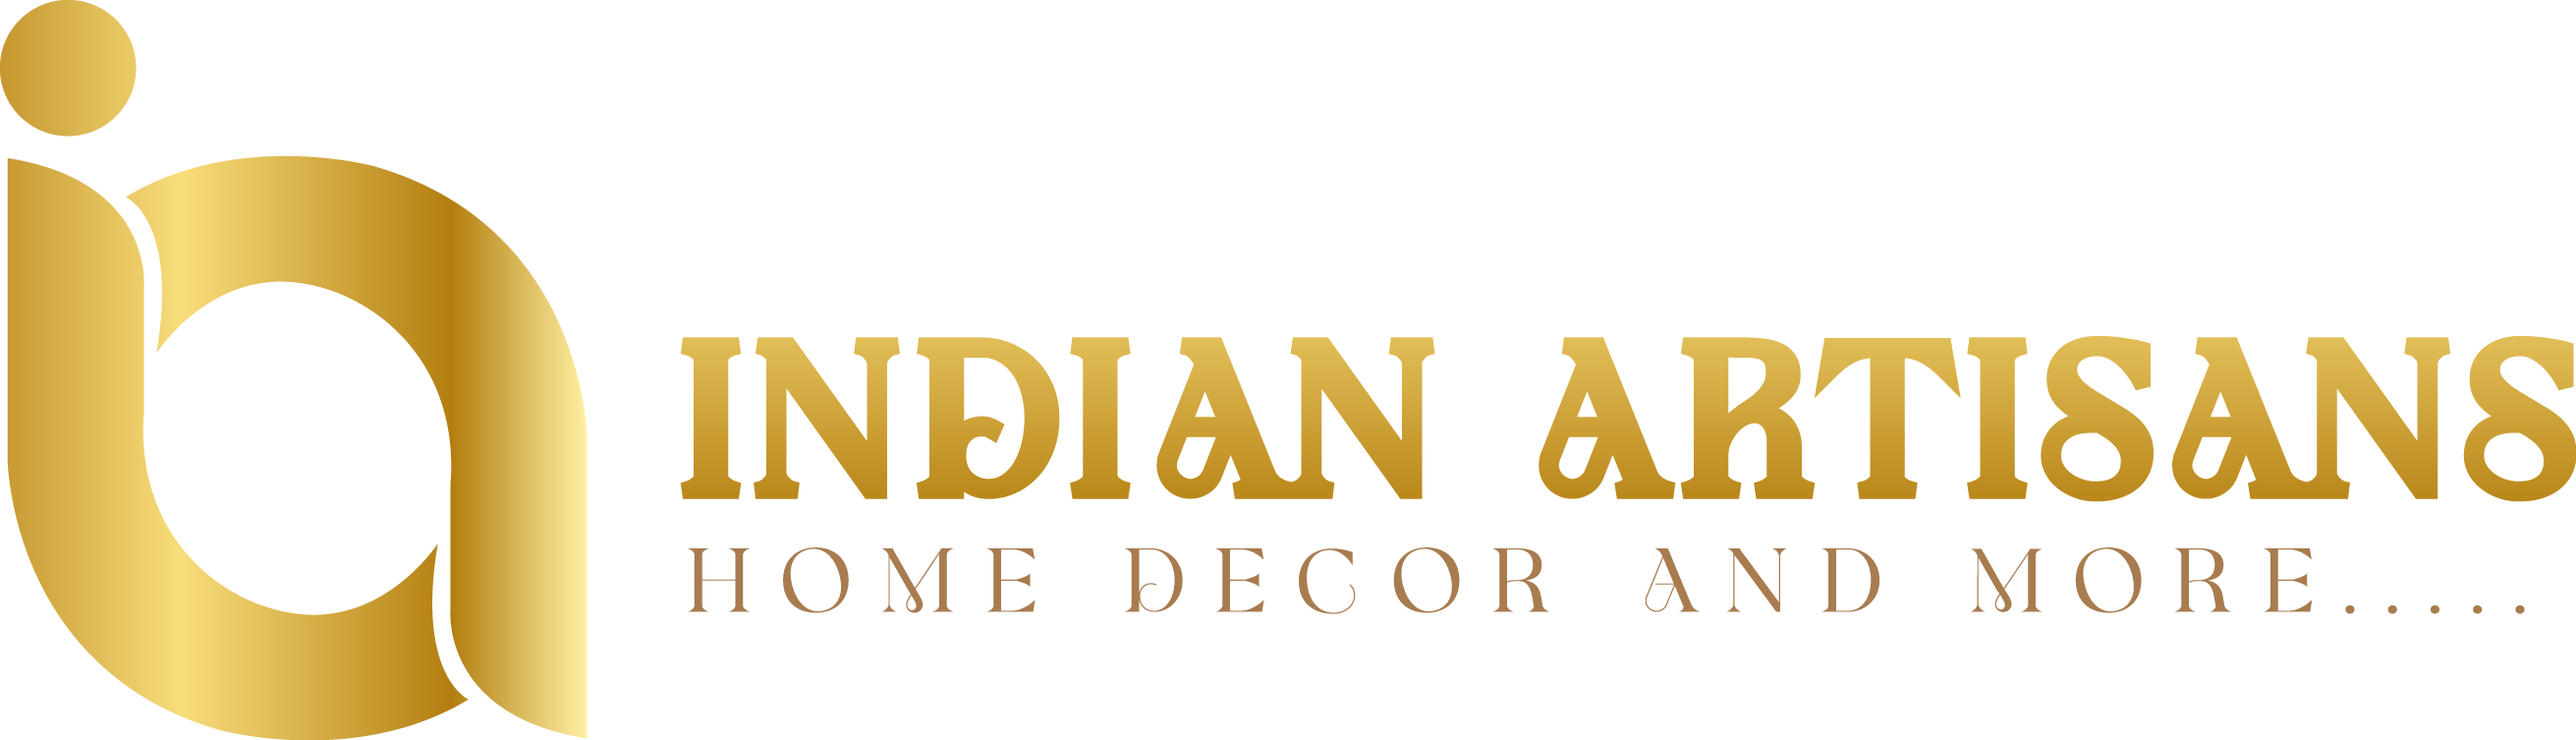 Indian Artisans